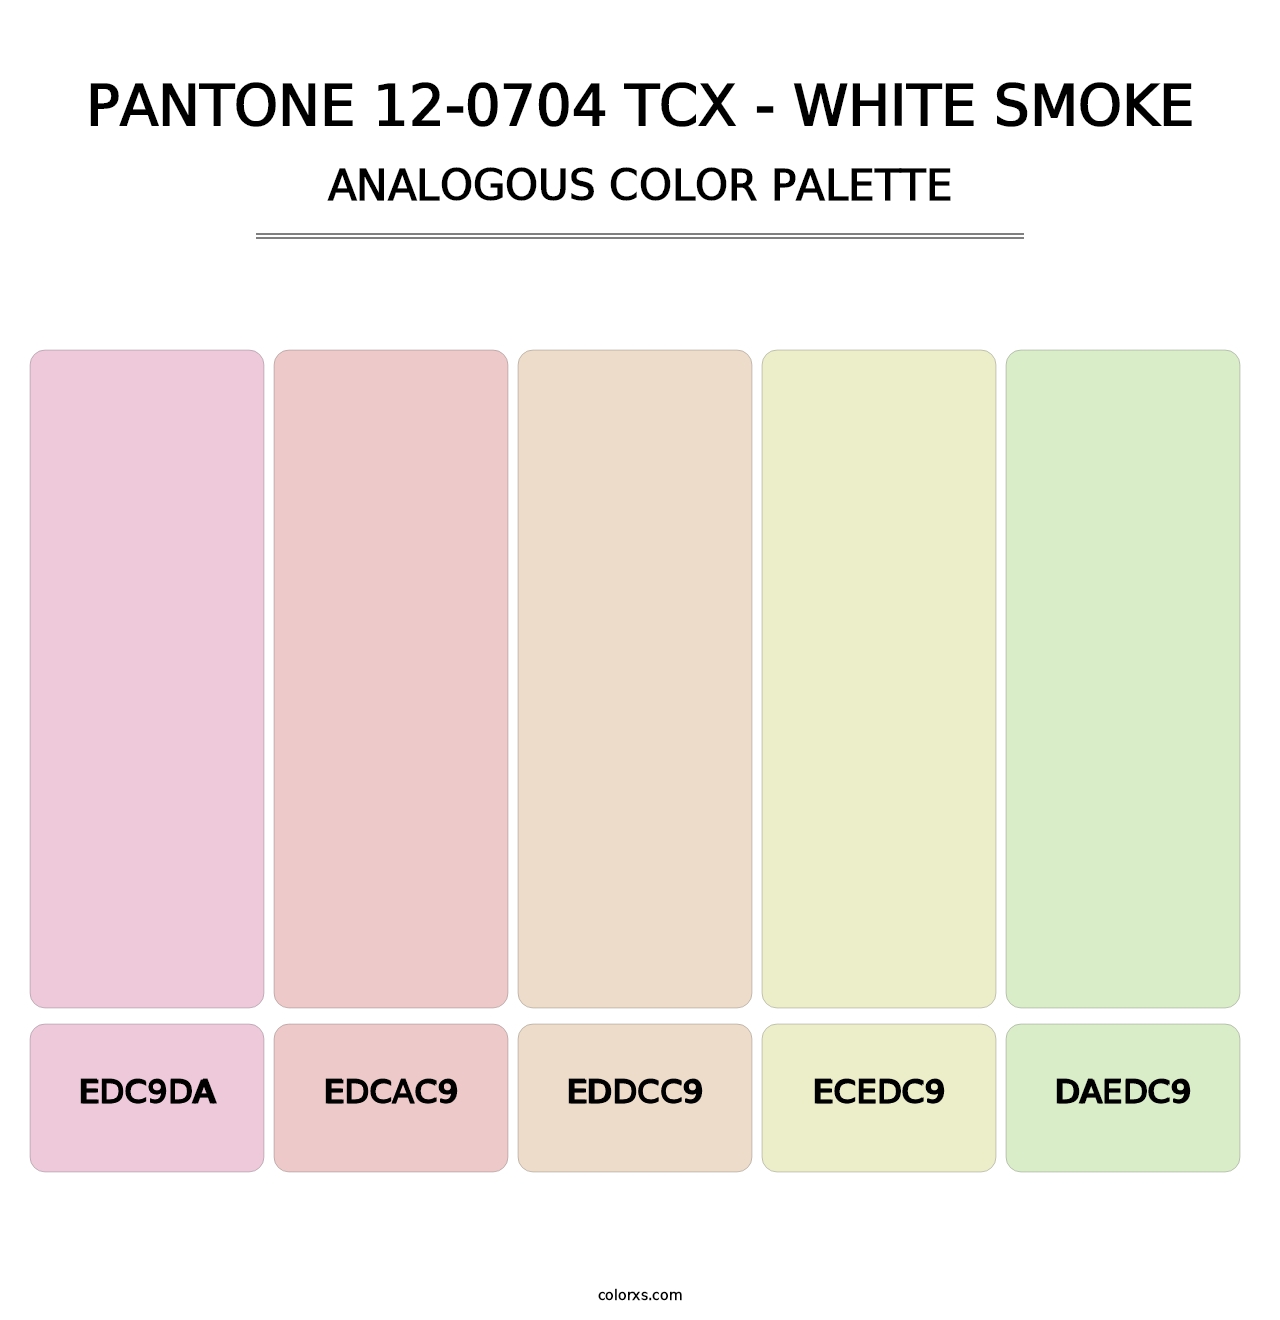 PANTONE 12-0704 TCX - White Smoke - Analogous Color Palette